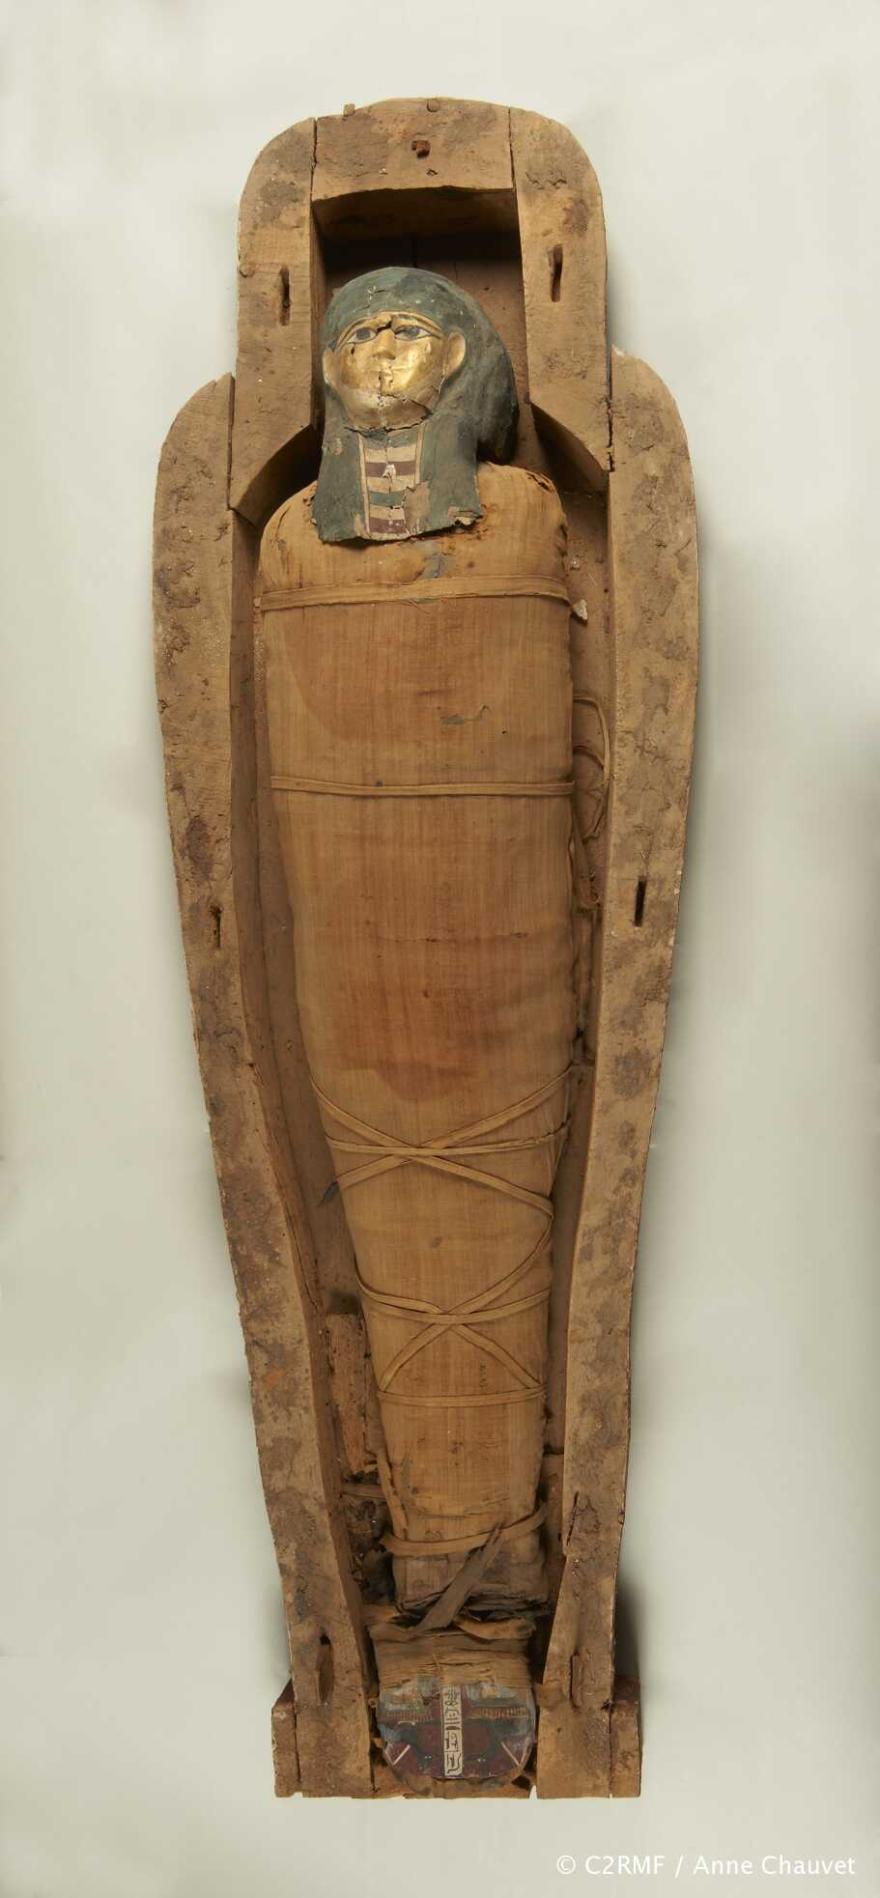 Media Name: la cuve du sarcophage et la momie, avant intervention : pieds détachés du corps.